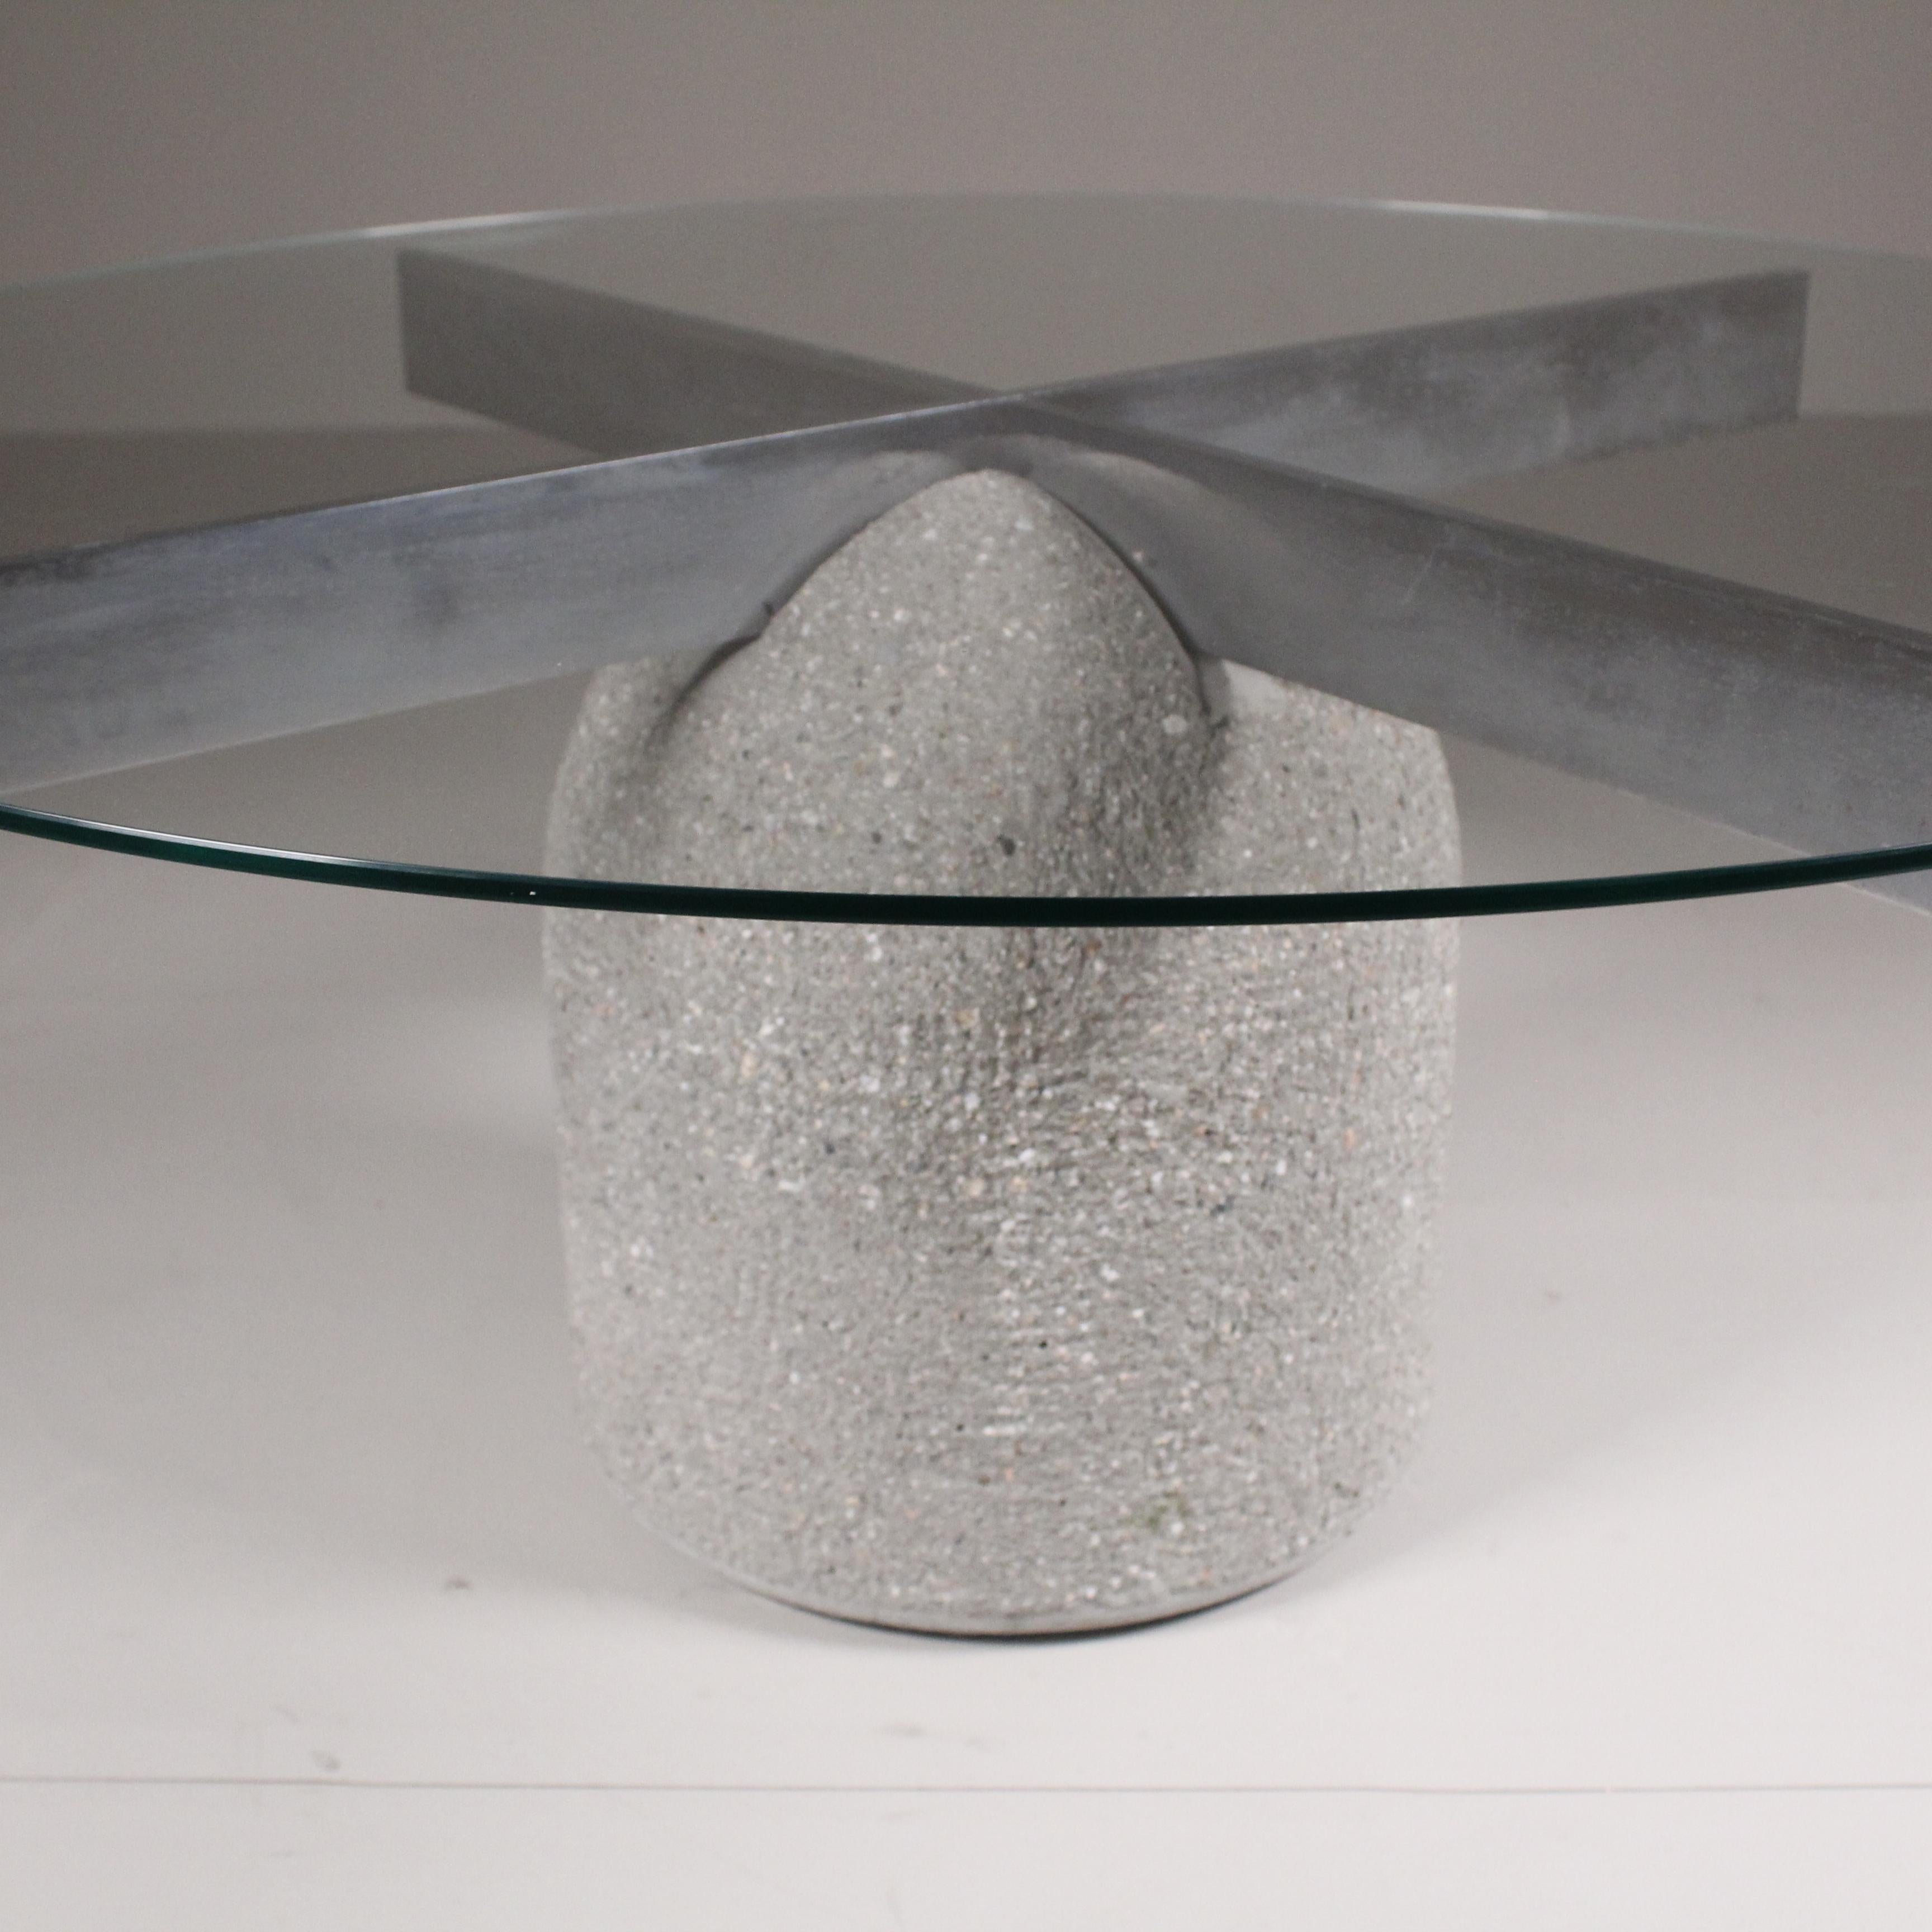 La table Paracarro, conçue par Giovanni Offredi, est un véritable chef-d'œuvre qui allie parfaitement fonctionnalité et esthétique. Avec son design élégant et contemporain, cette table attire l'attention dans n'importe quel environnement. Fabriqué